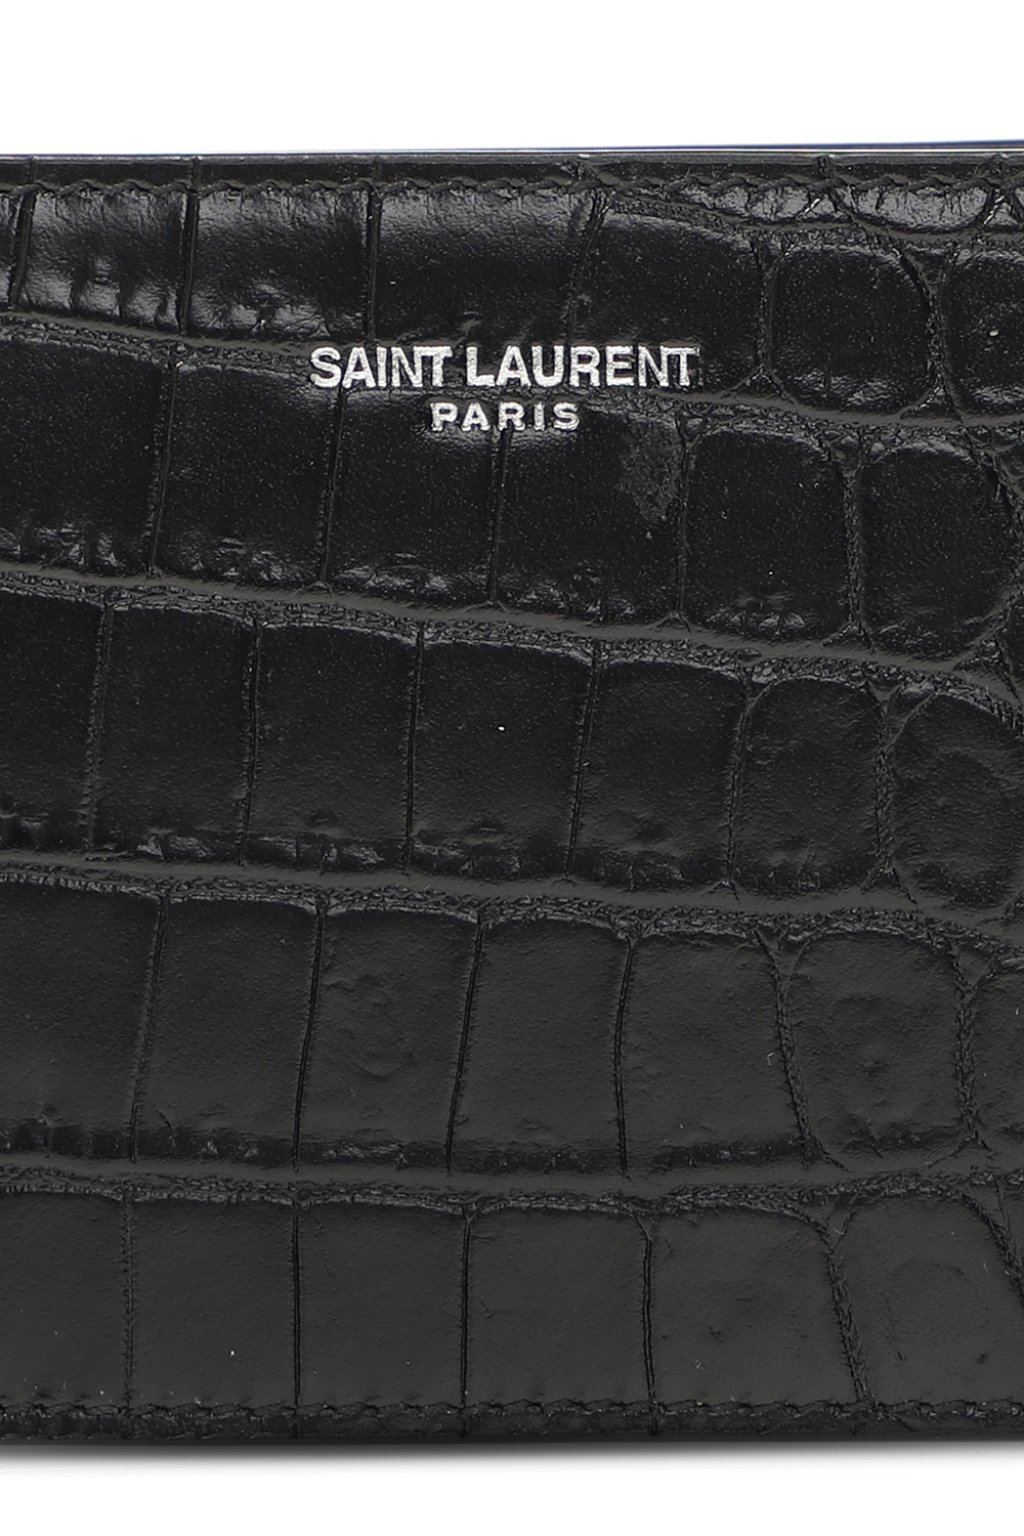 Saint Laurent Wallet with money clip